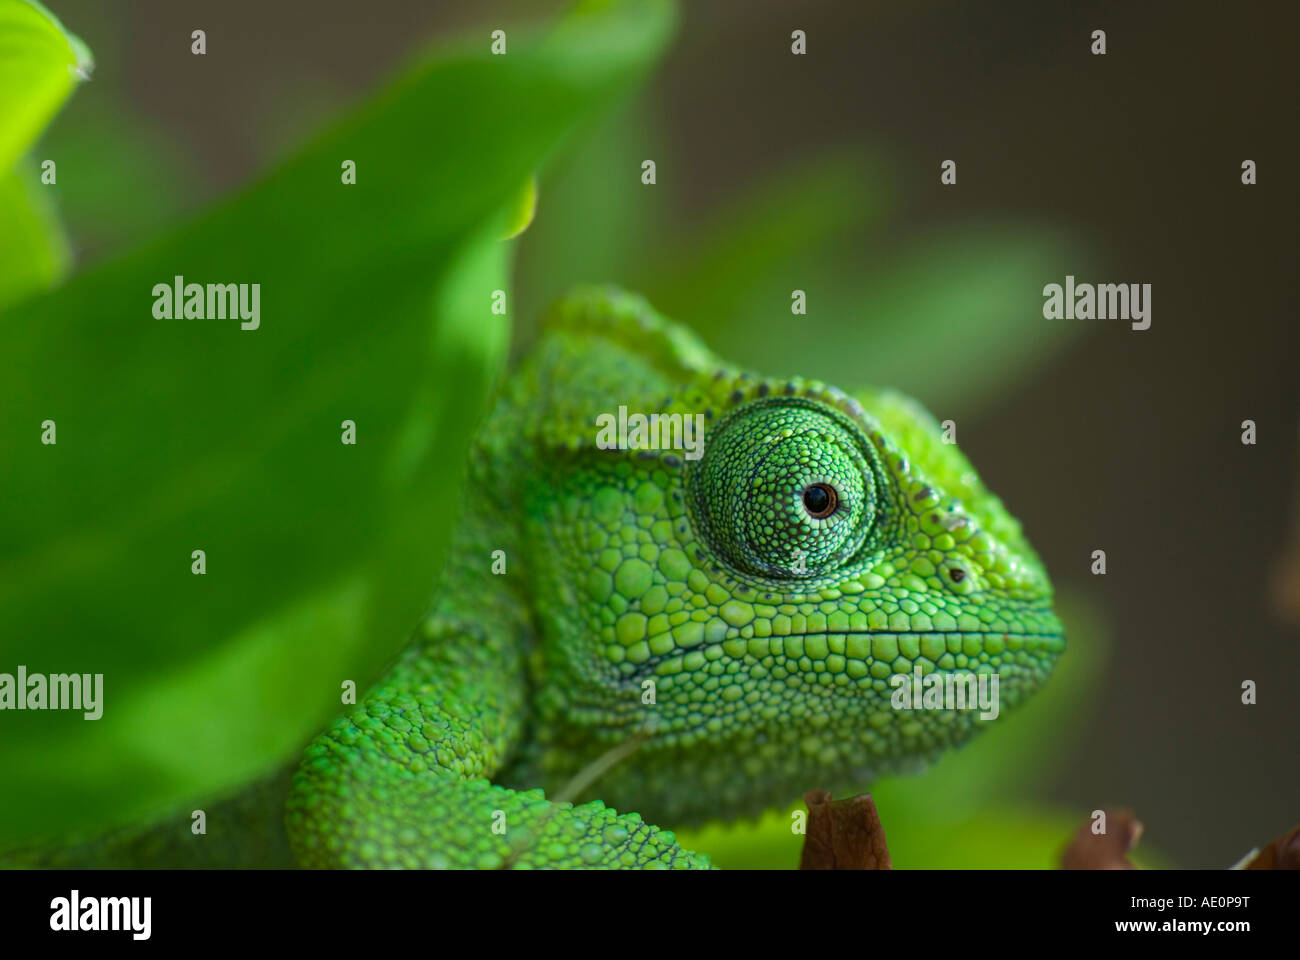 green chameleon Stock Photo